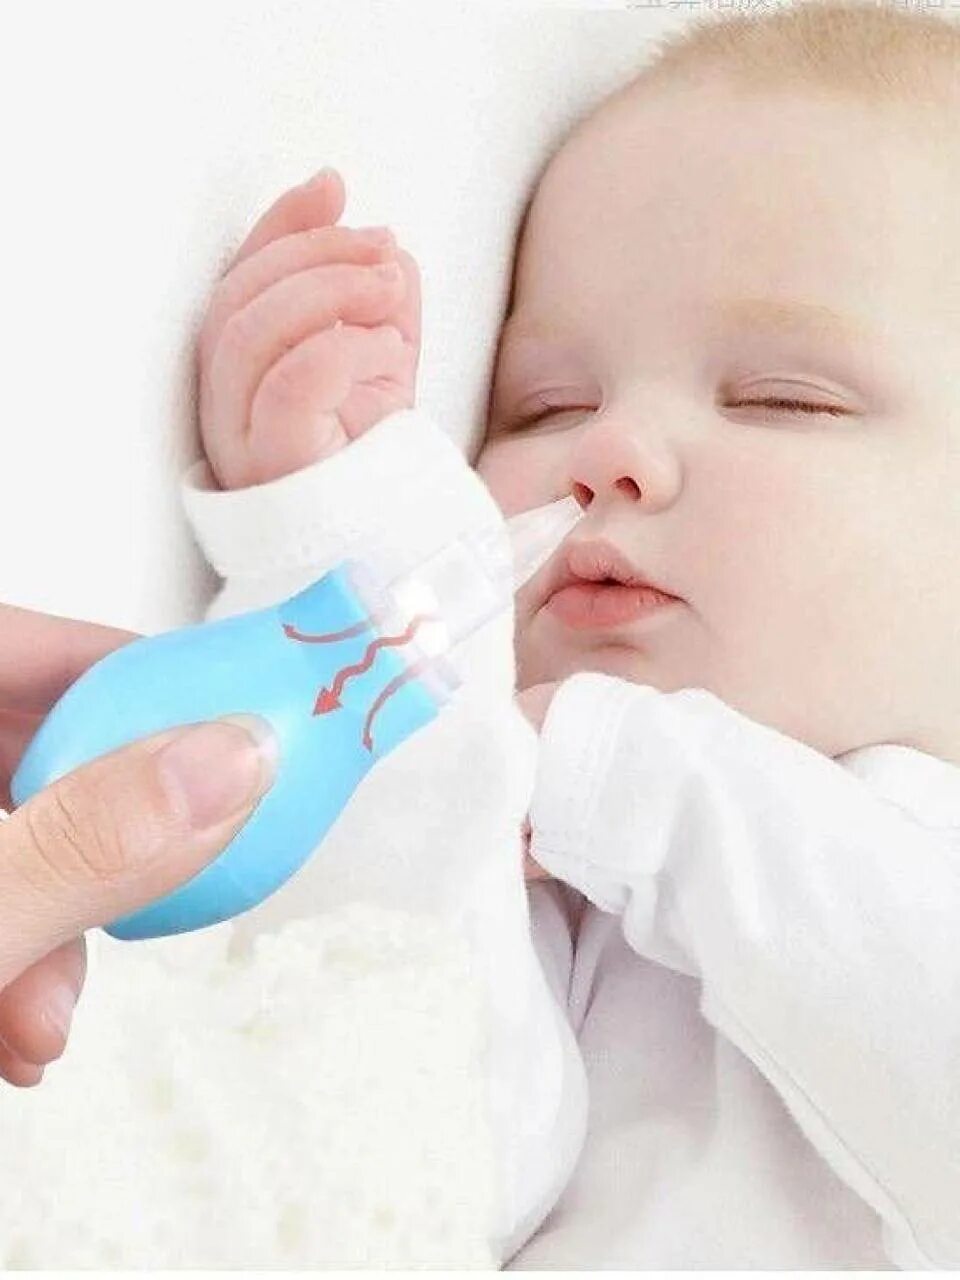 Аспиратор назальный бэби Care. Аспиратор для новорожденных для носа. Респиратор для носа для новорожденных. Для очистки носа новорожденного.